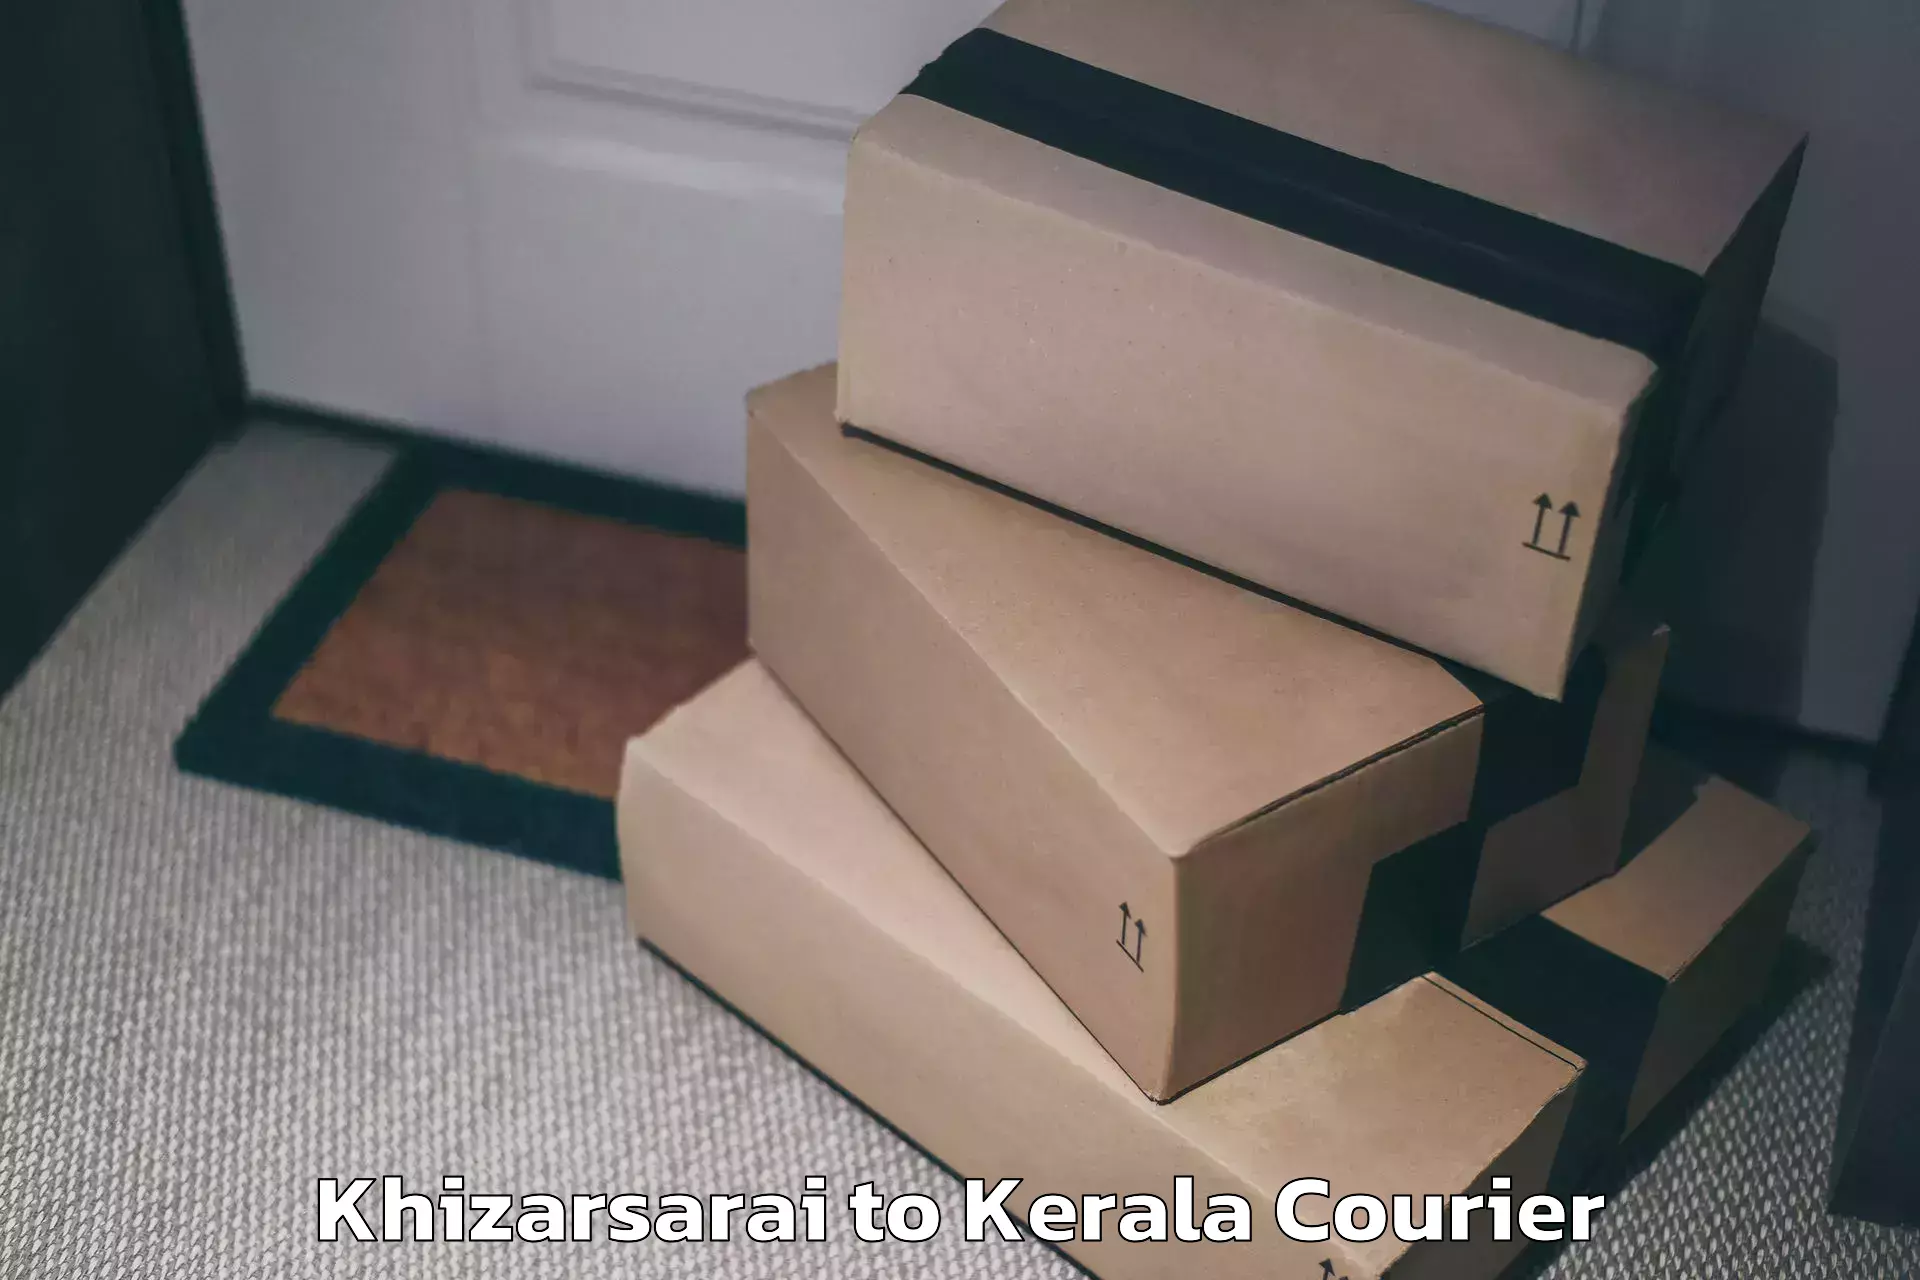 Baggage relocation service Khizarsarai to Adoor